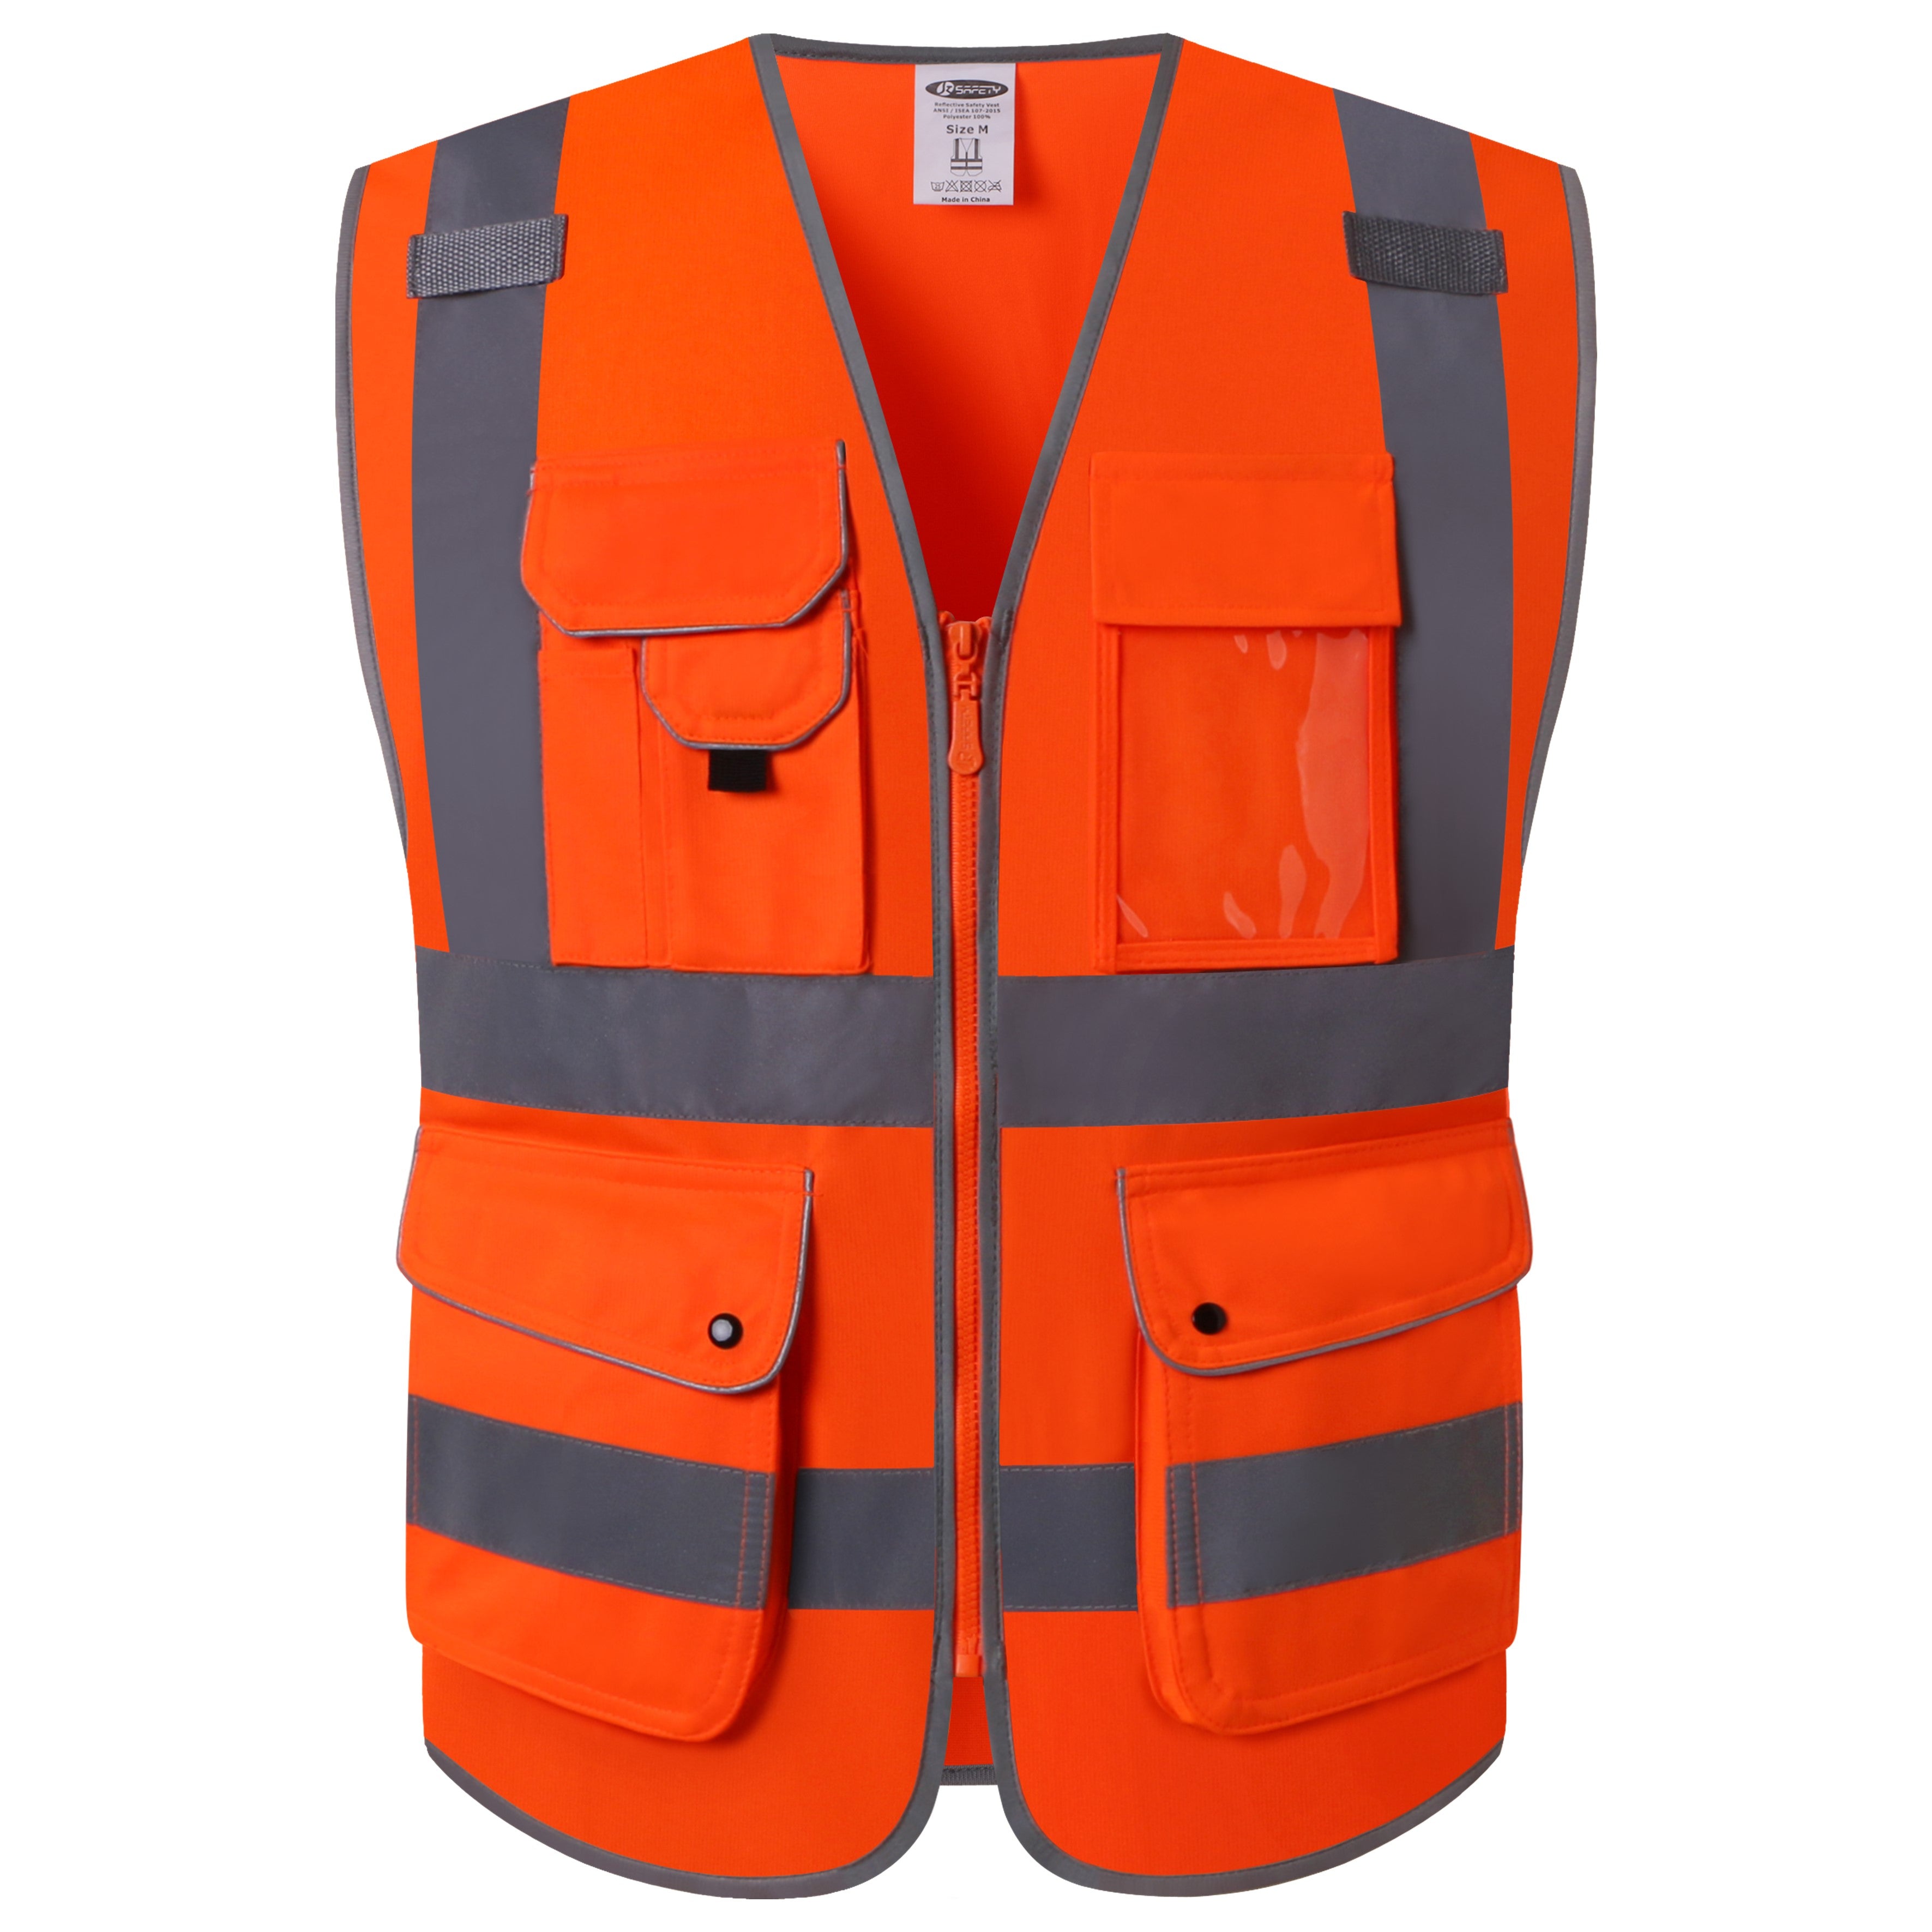 JKSafety 9 Pockets Hi-Vis Reflective Safety Vest